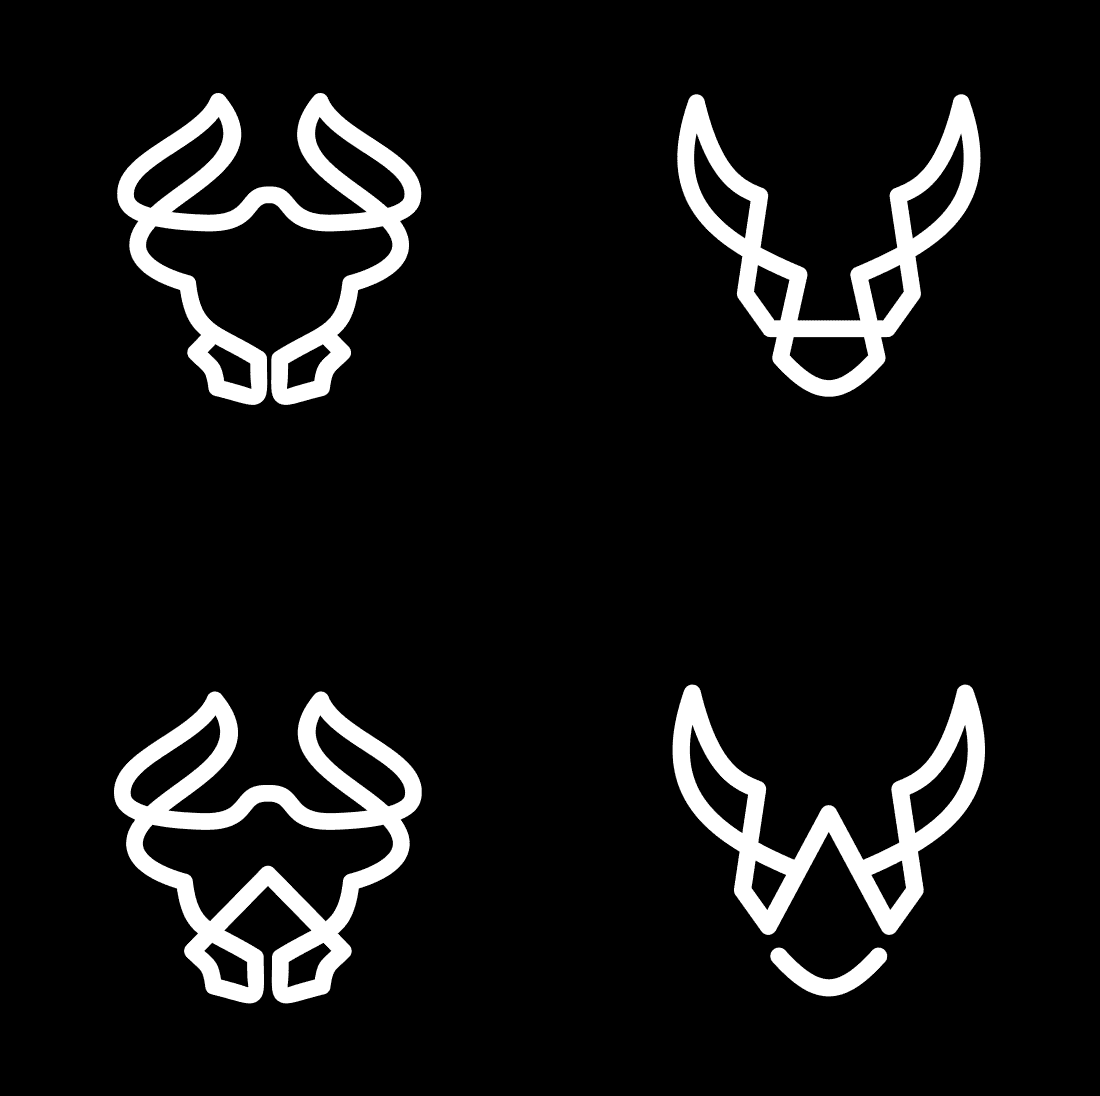 Set of four white logos on a black background.